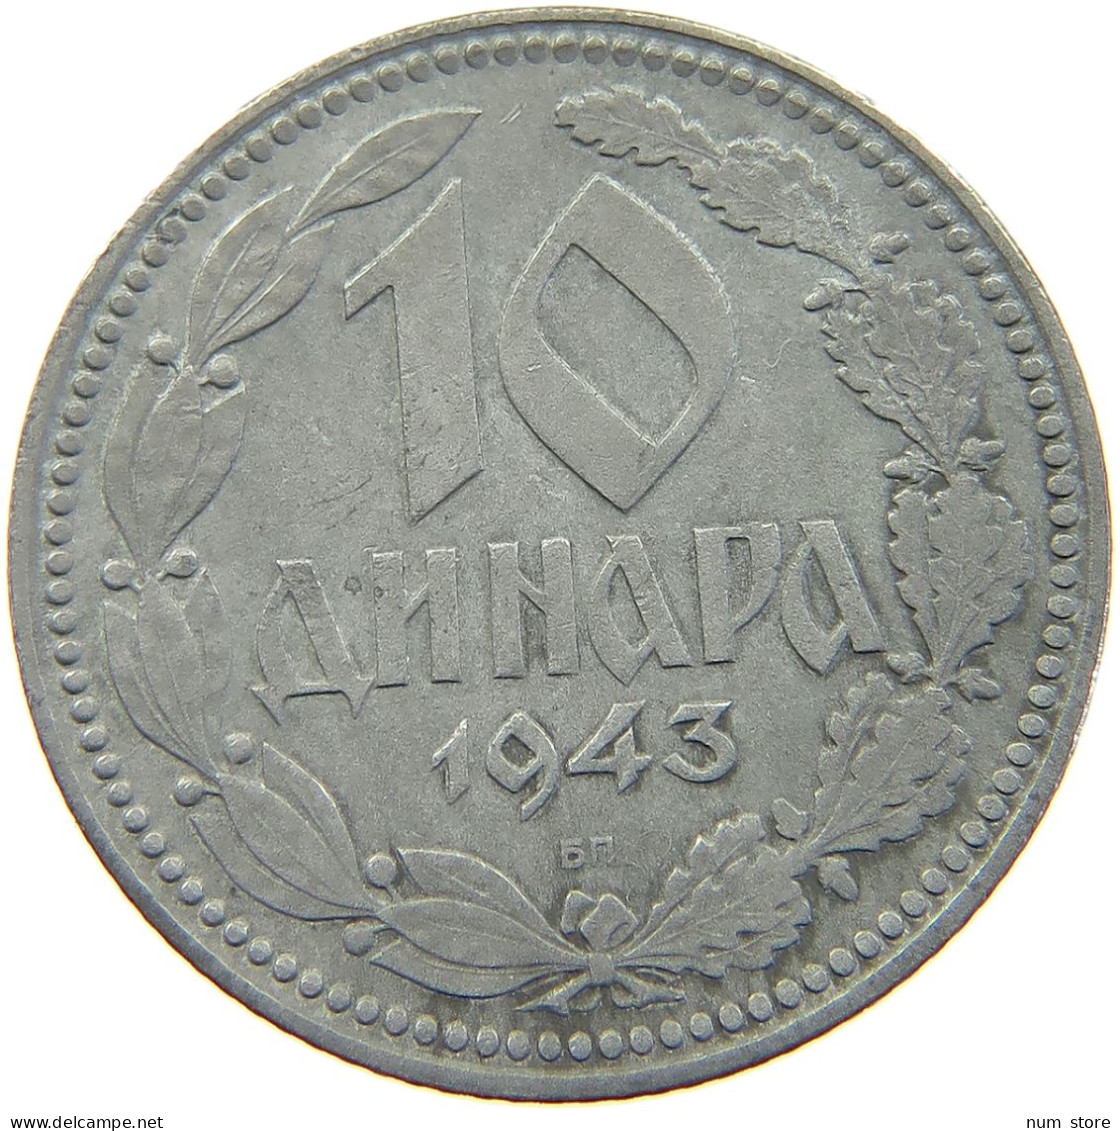 SERBIA 10 DINARA 1943  #a049 0501 - Serbie